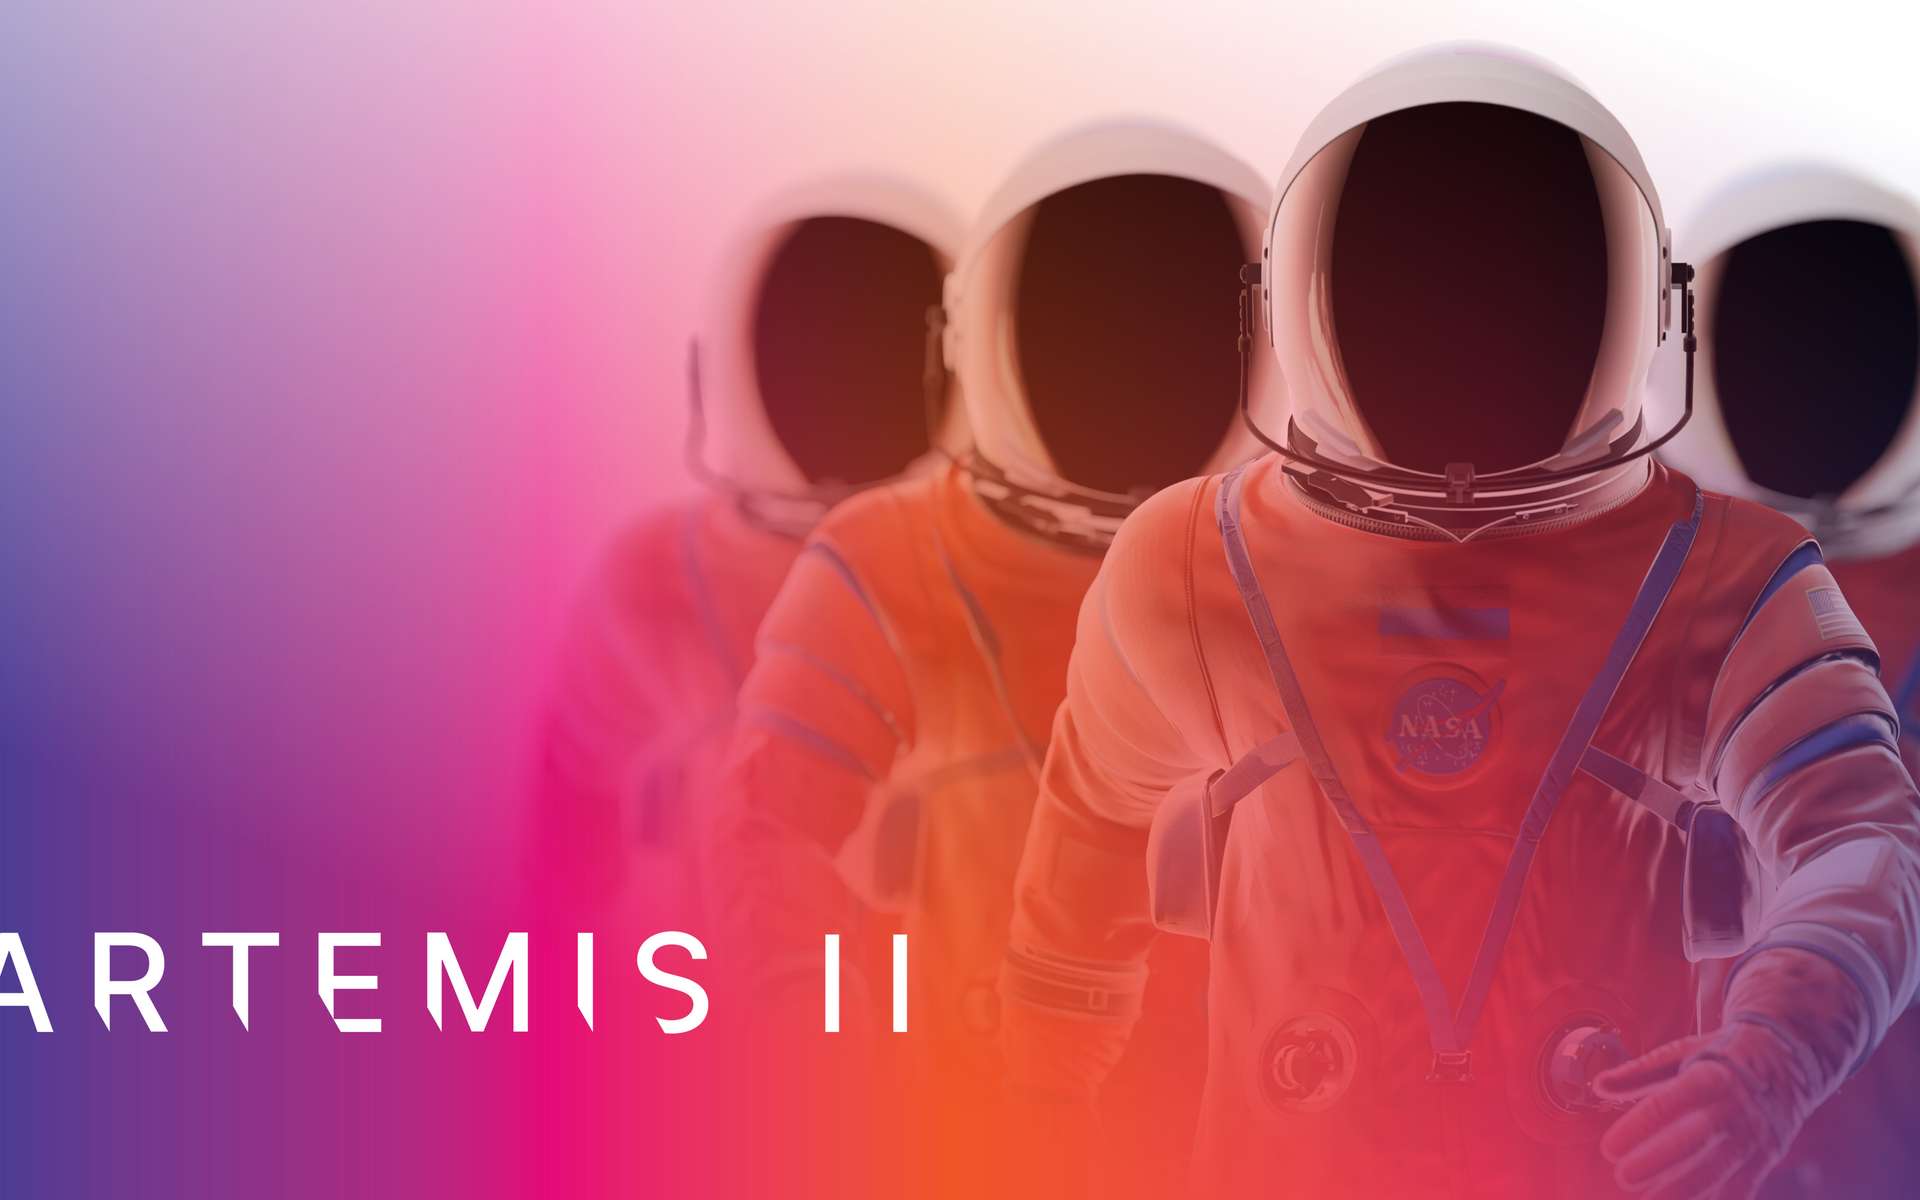 On connaît les noms des astronautes de la mission Artemis II vers la Lune